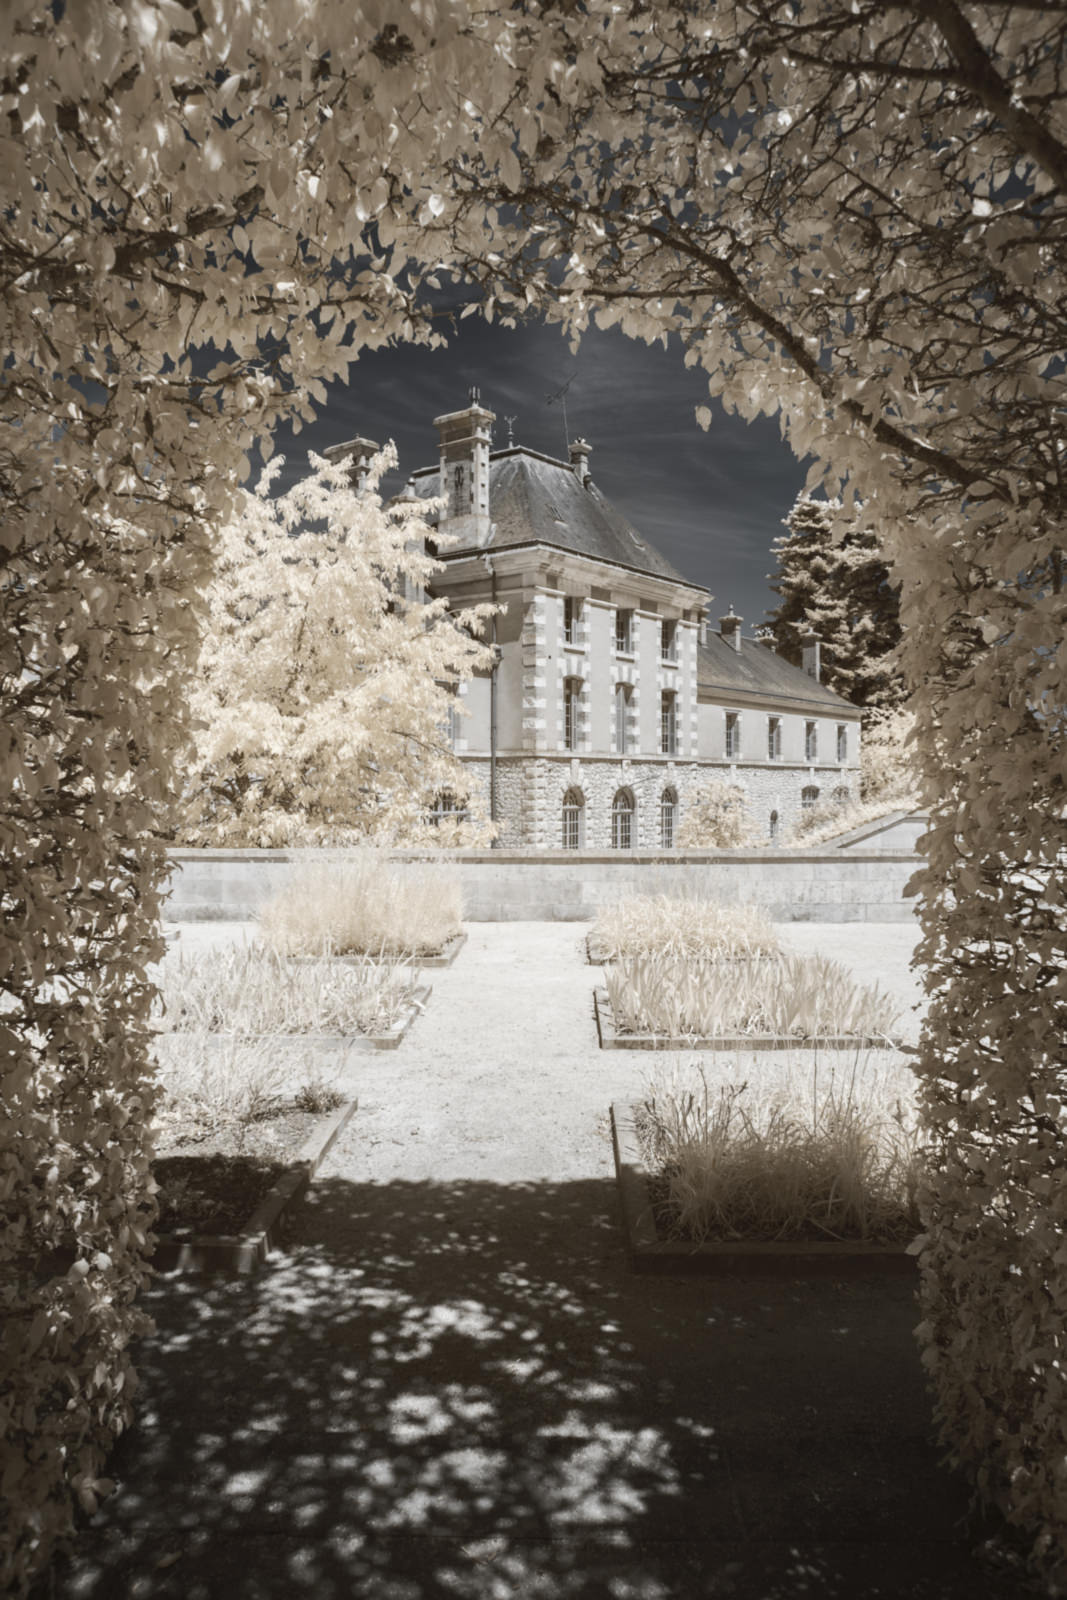 Ngắm nhìn bộ ảnh những cung điện thần tiên tại Loire Valley với kính lọc hồng ngoại